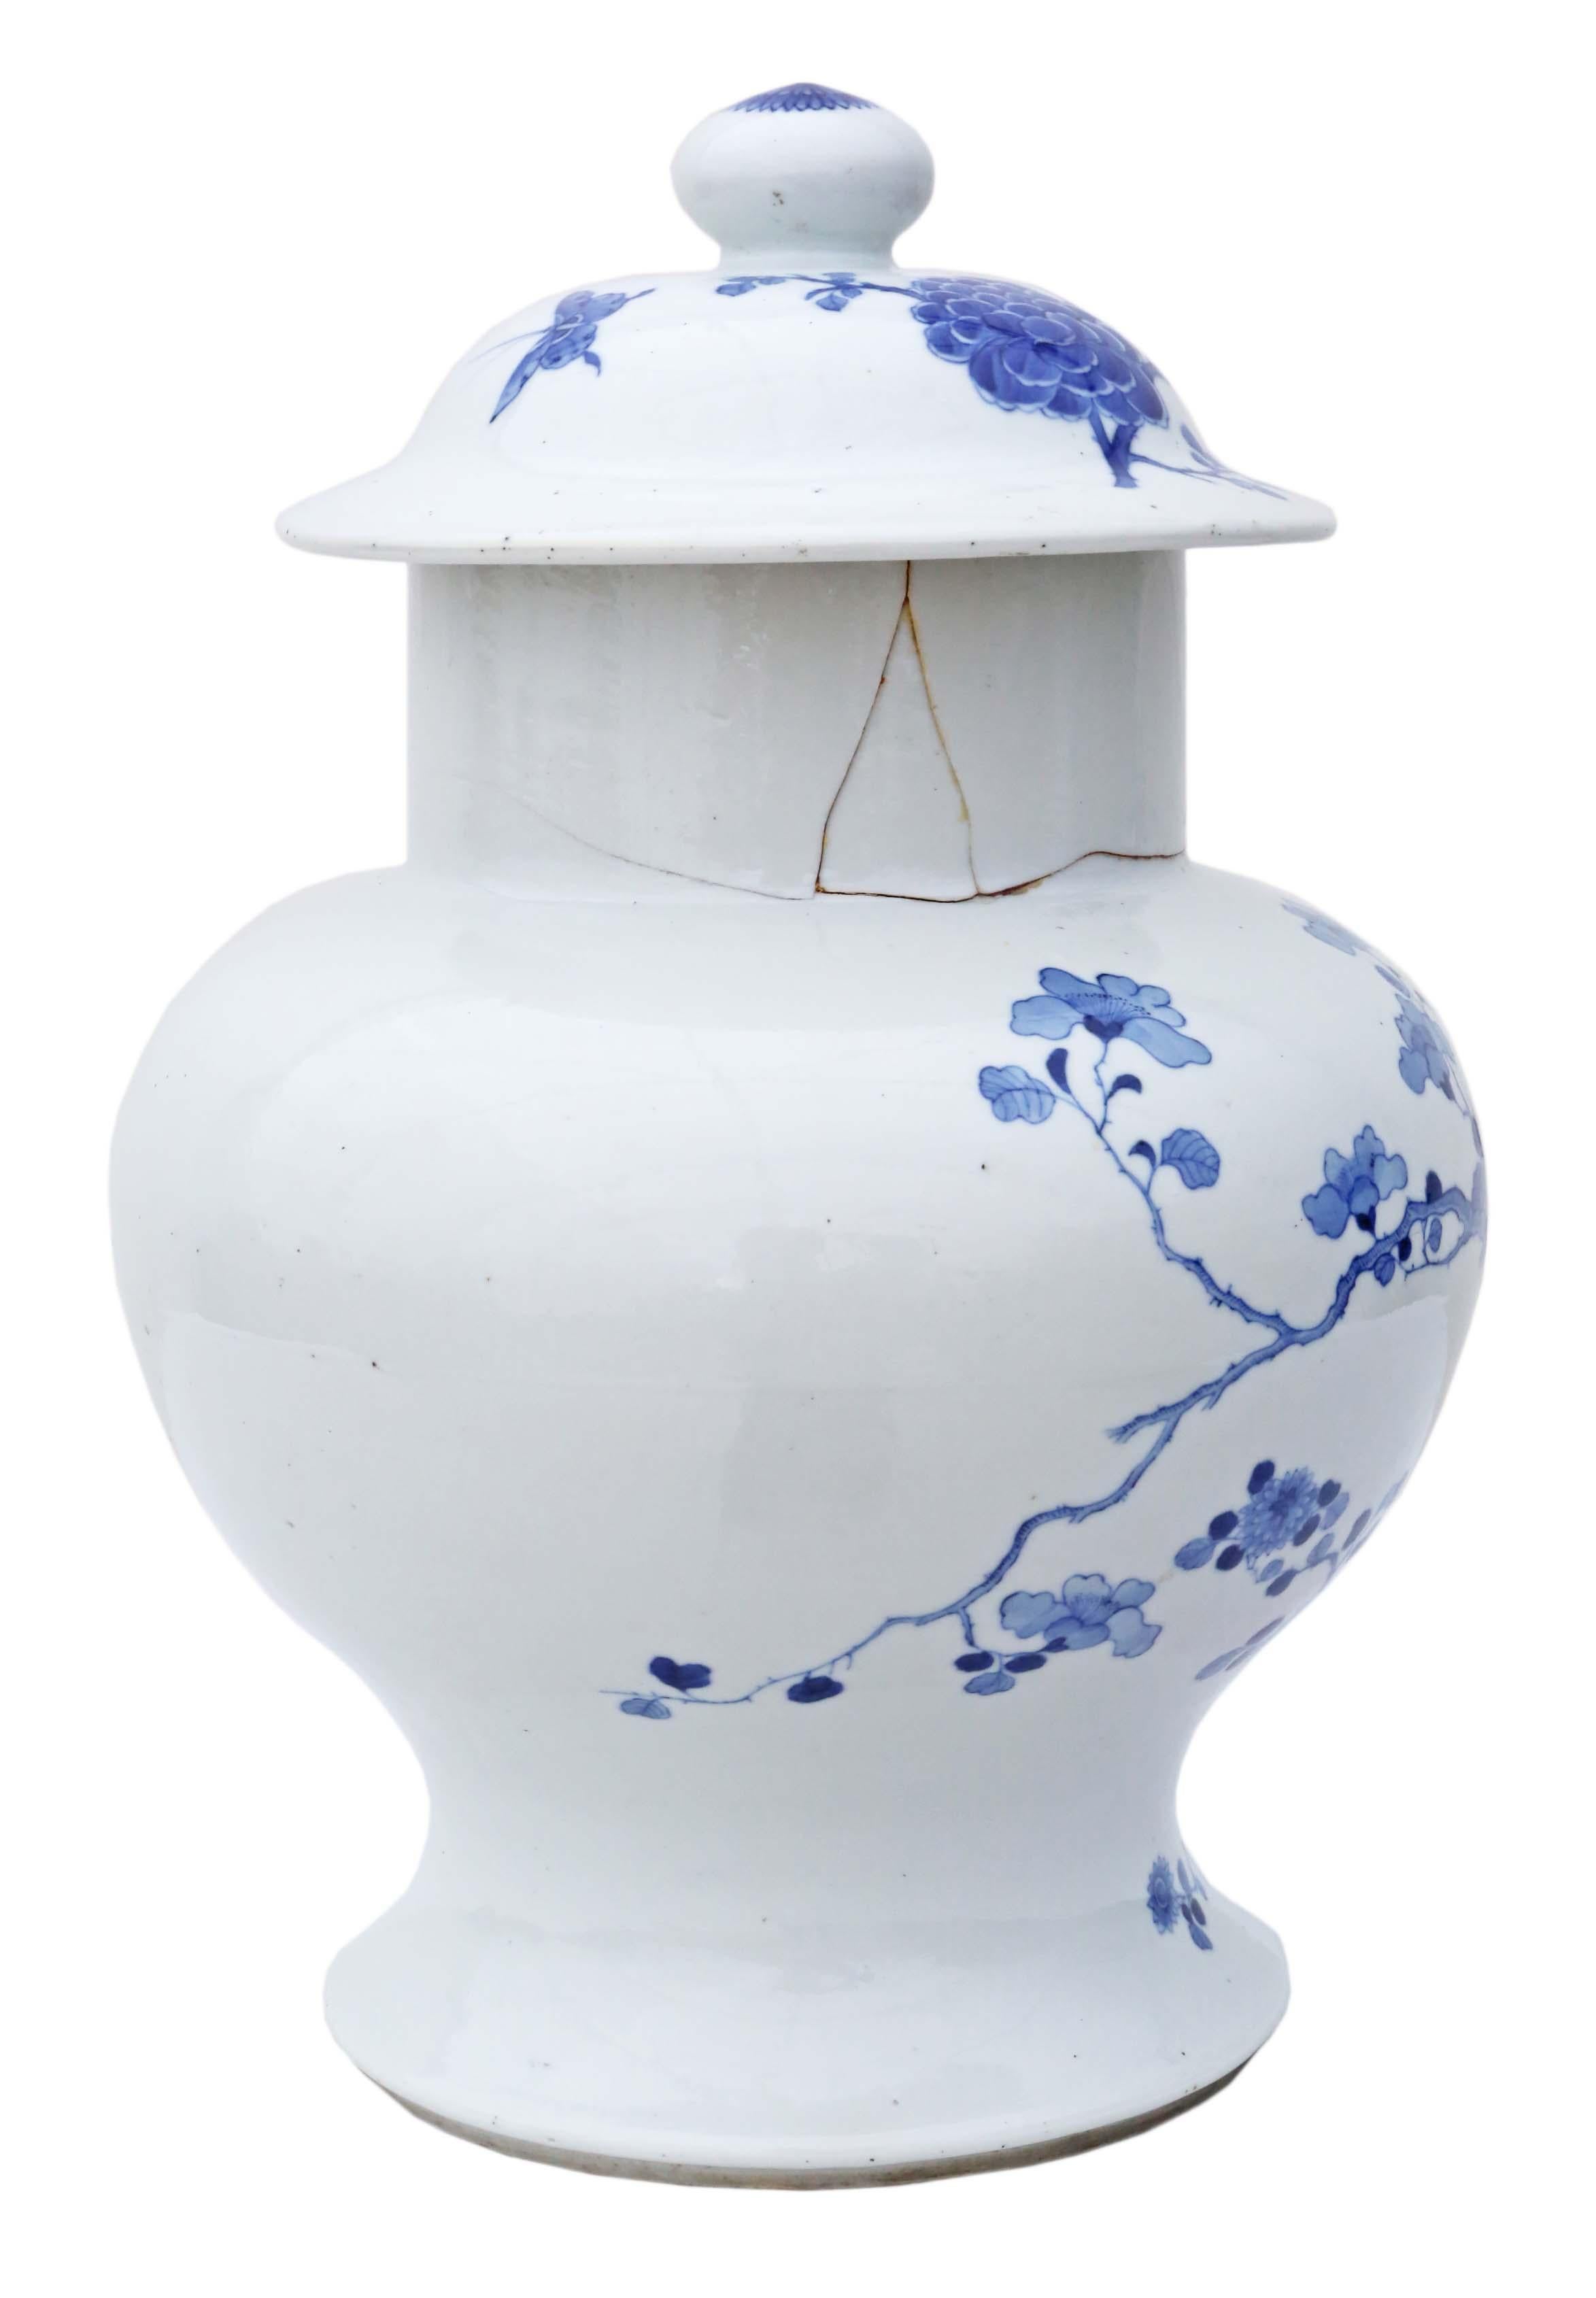 Antikes großes blau-weißes chinesisch-orientalisches Keramik-Ingwer-Glas mit Deckel. Das genaue Alter ist ungewiss, aber man nimmt an, dass es aus dem späten 18. oder frühen 19. Jahrhundert stammt. Auf dem Sockel befindet sich eine 6-stellige